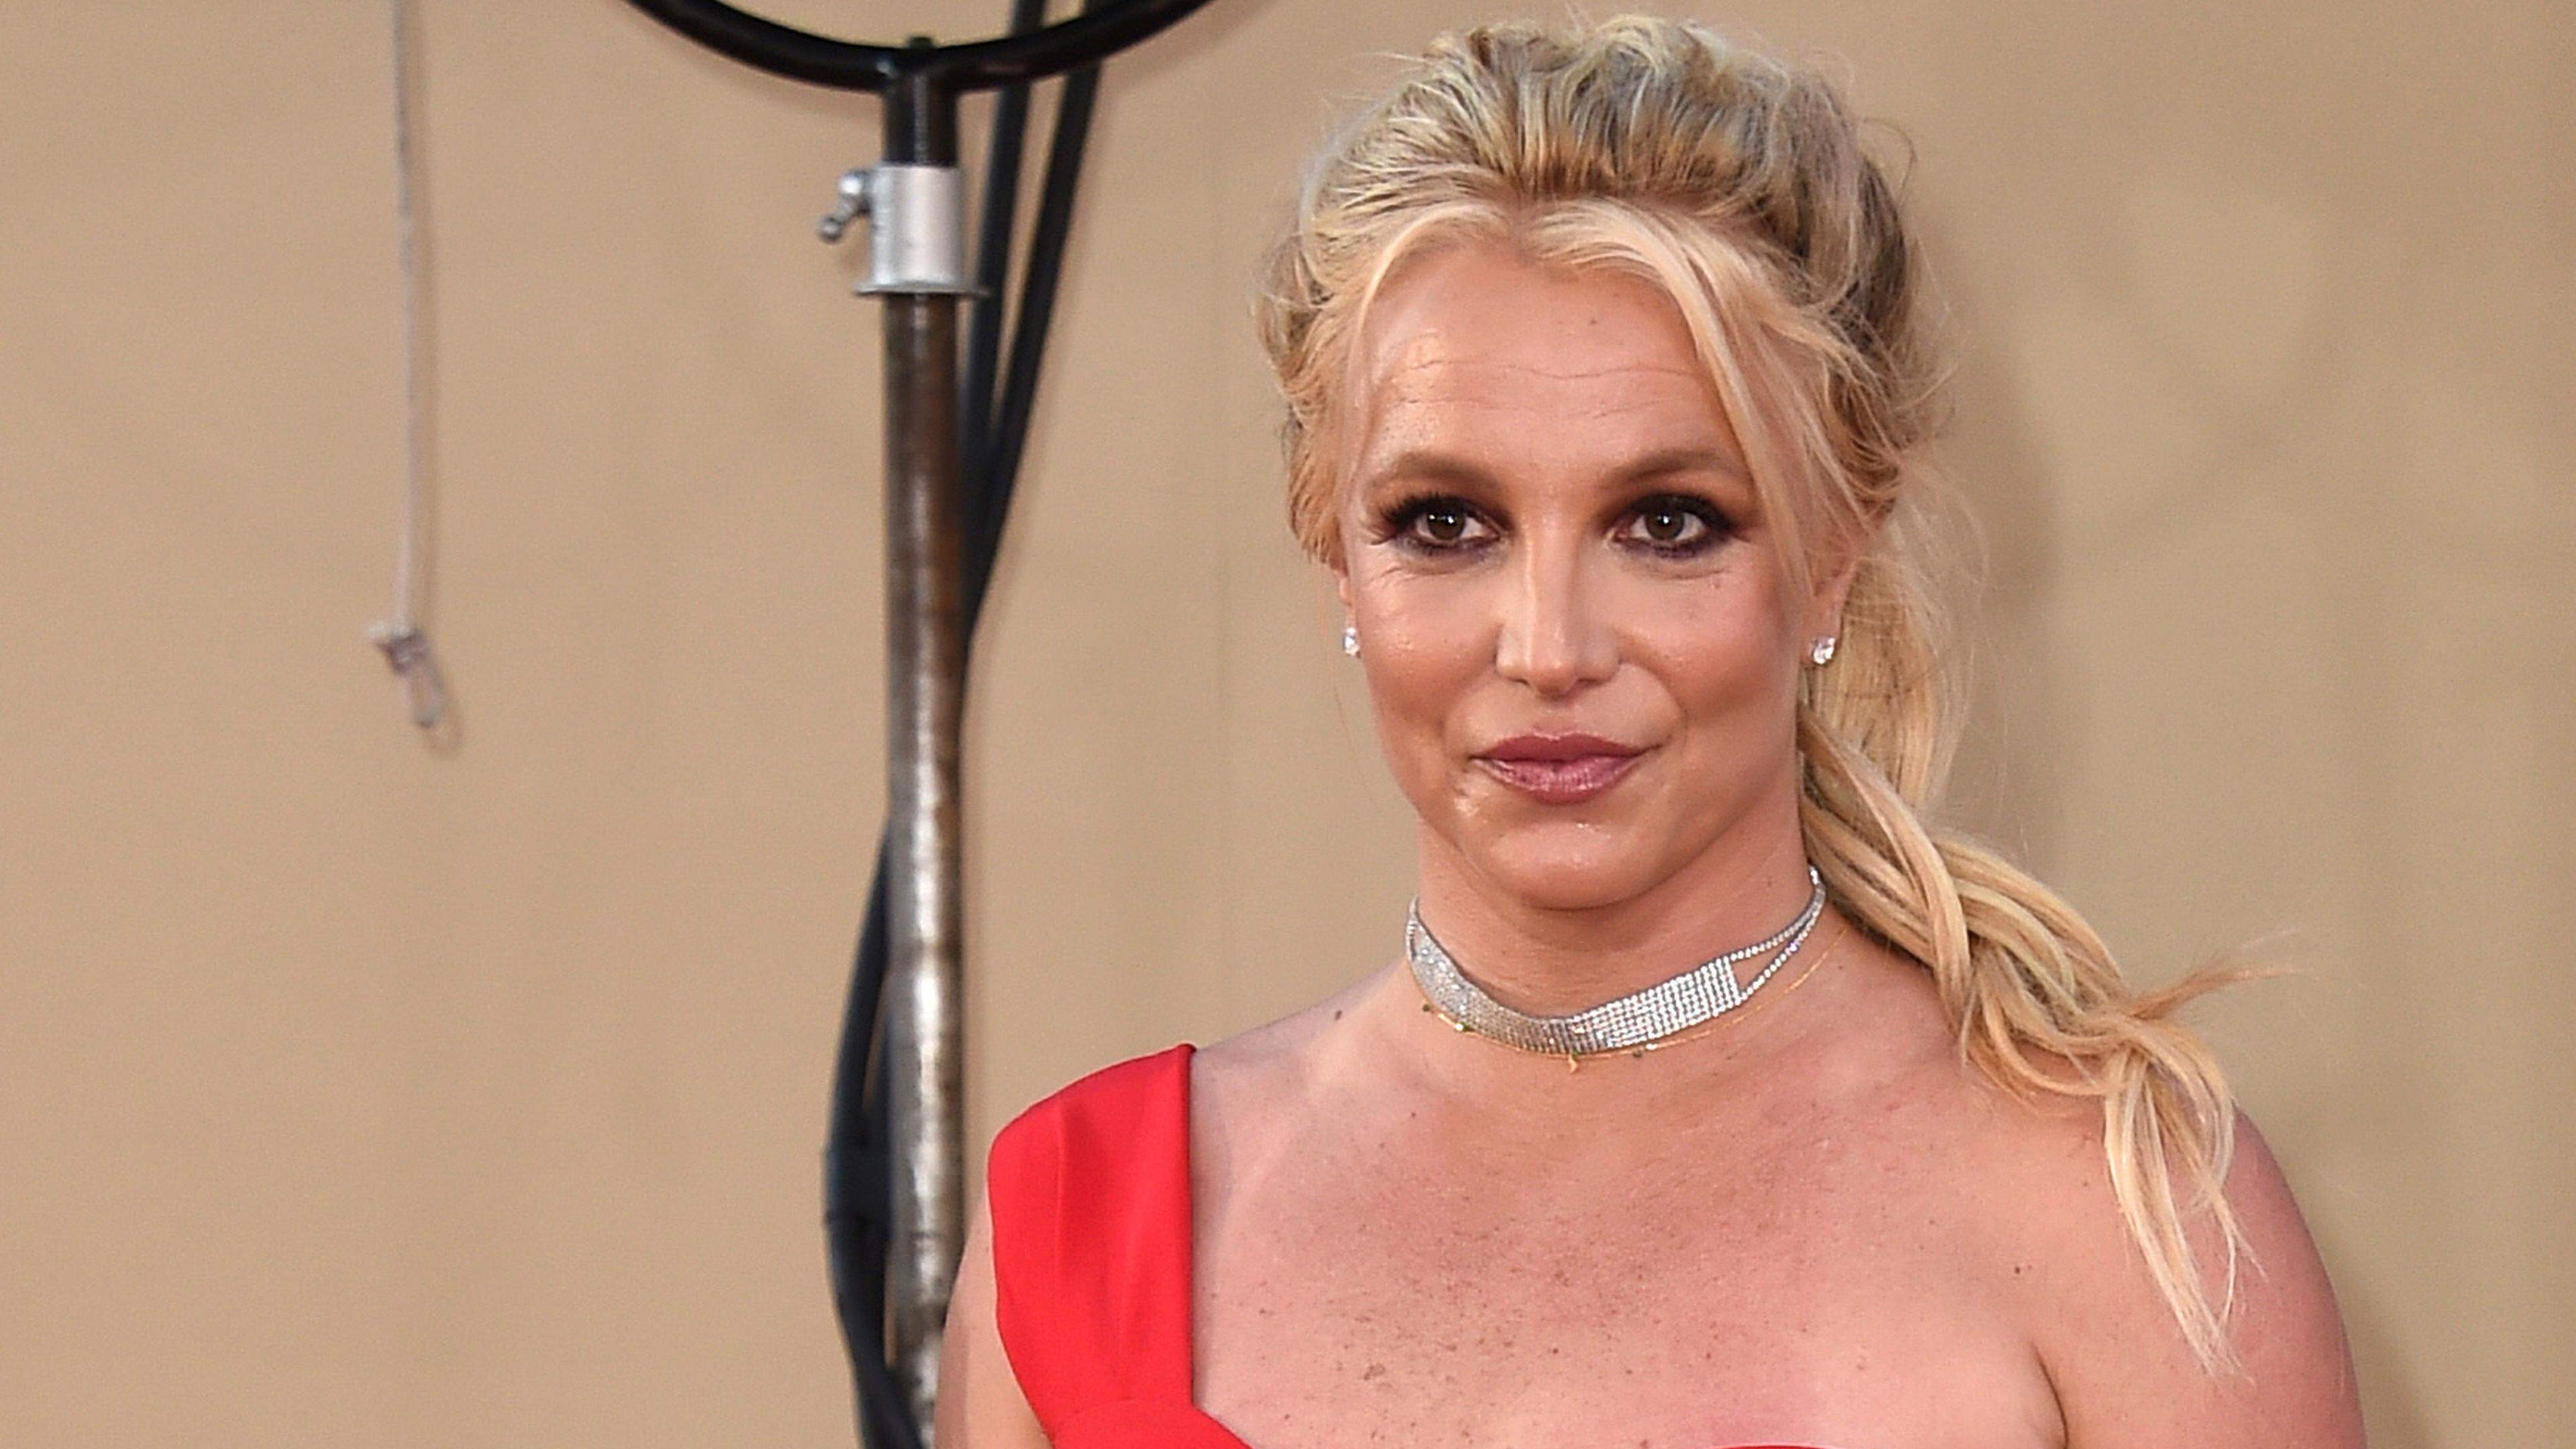 ARCHIV - 23.07.2019, USA, Los Angeles: Sänger Britney Spears kommt zur Premiere von "Once Upon a Time in Hollywood". (zu dpa: «Britney Spears weist Berichte über angeblichen Streit in Hotel zurück») Foto: Jordan Strauss/Invision via AP/dpa +++ dpa-Bildfunk +++